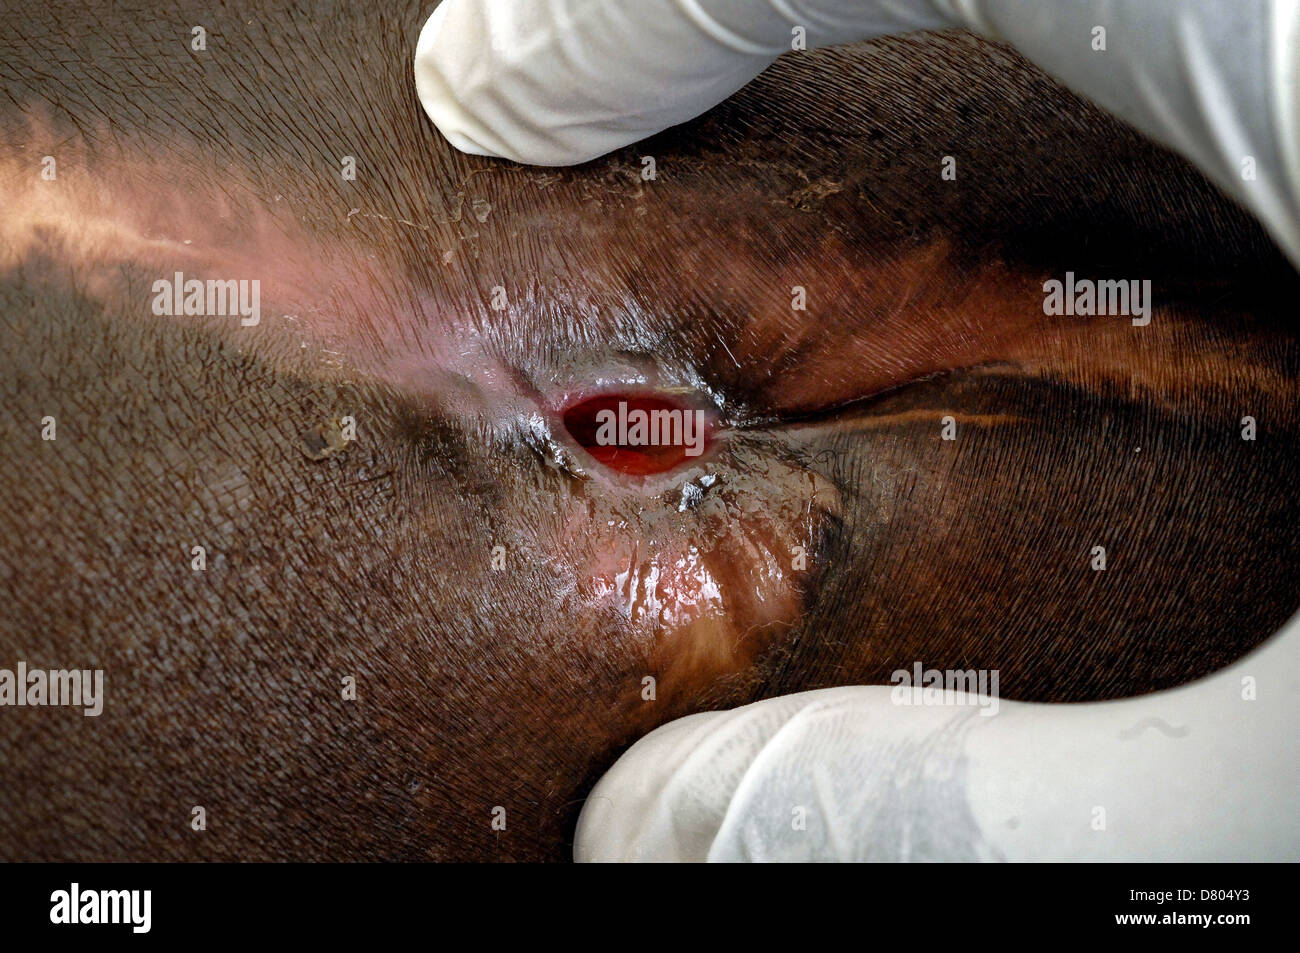 Un dermatólogo examina el proceso de cicatrización de una herida causada por micetoma. Foto de stock